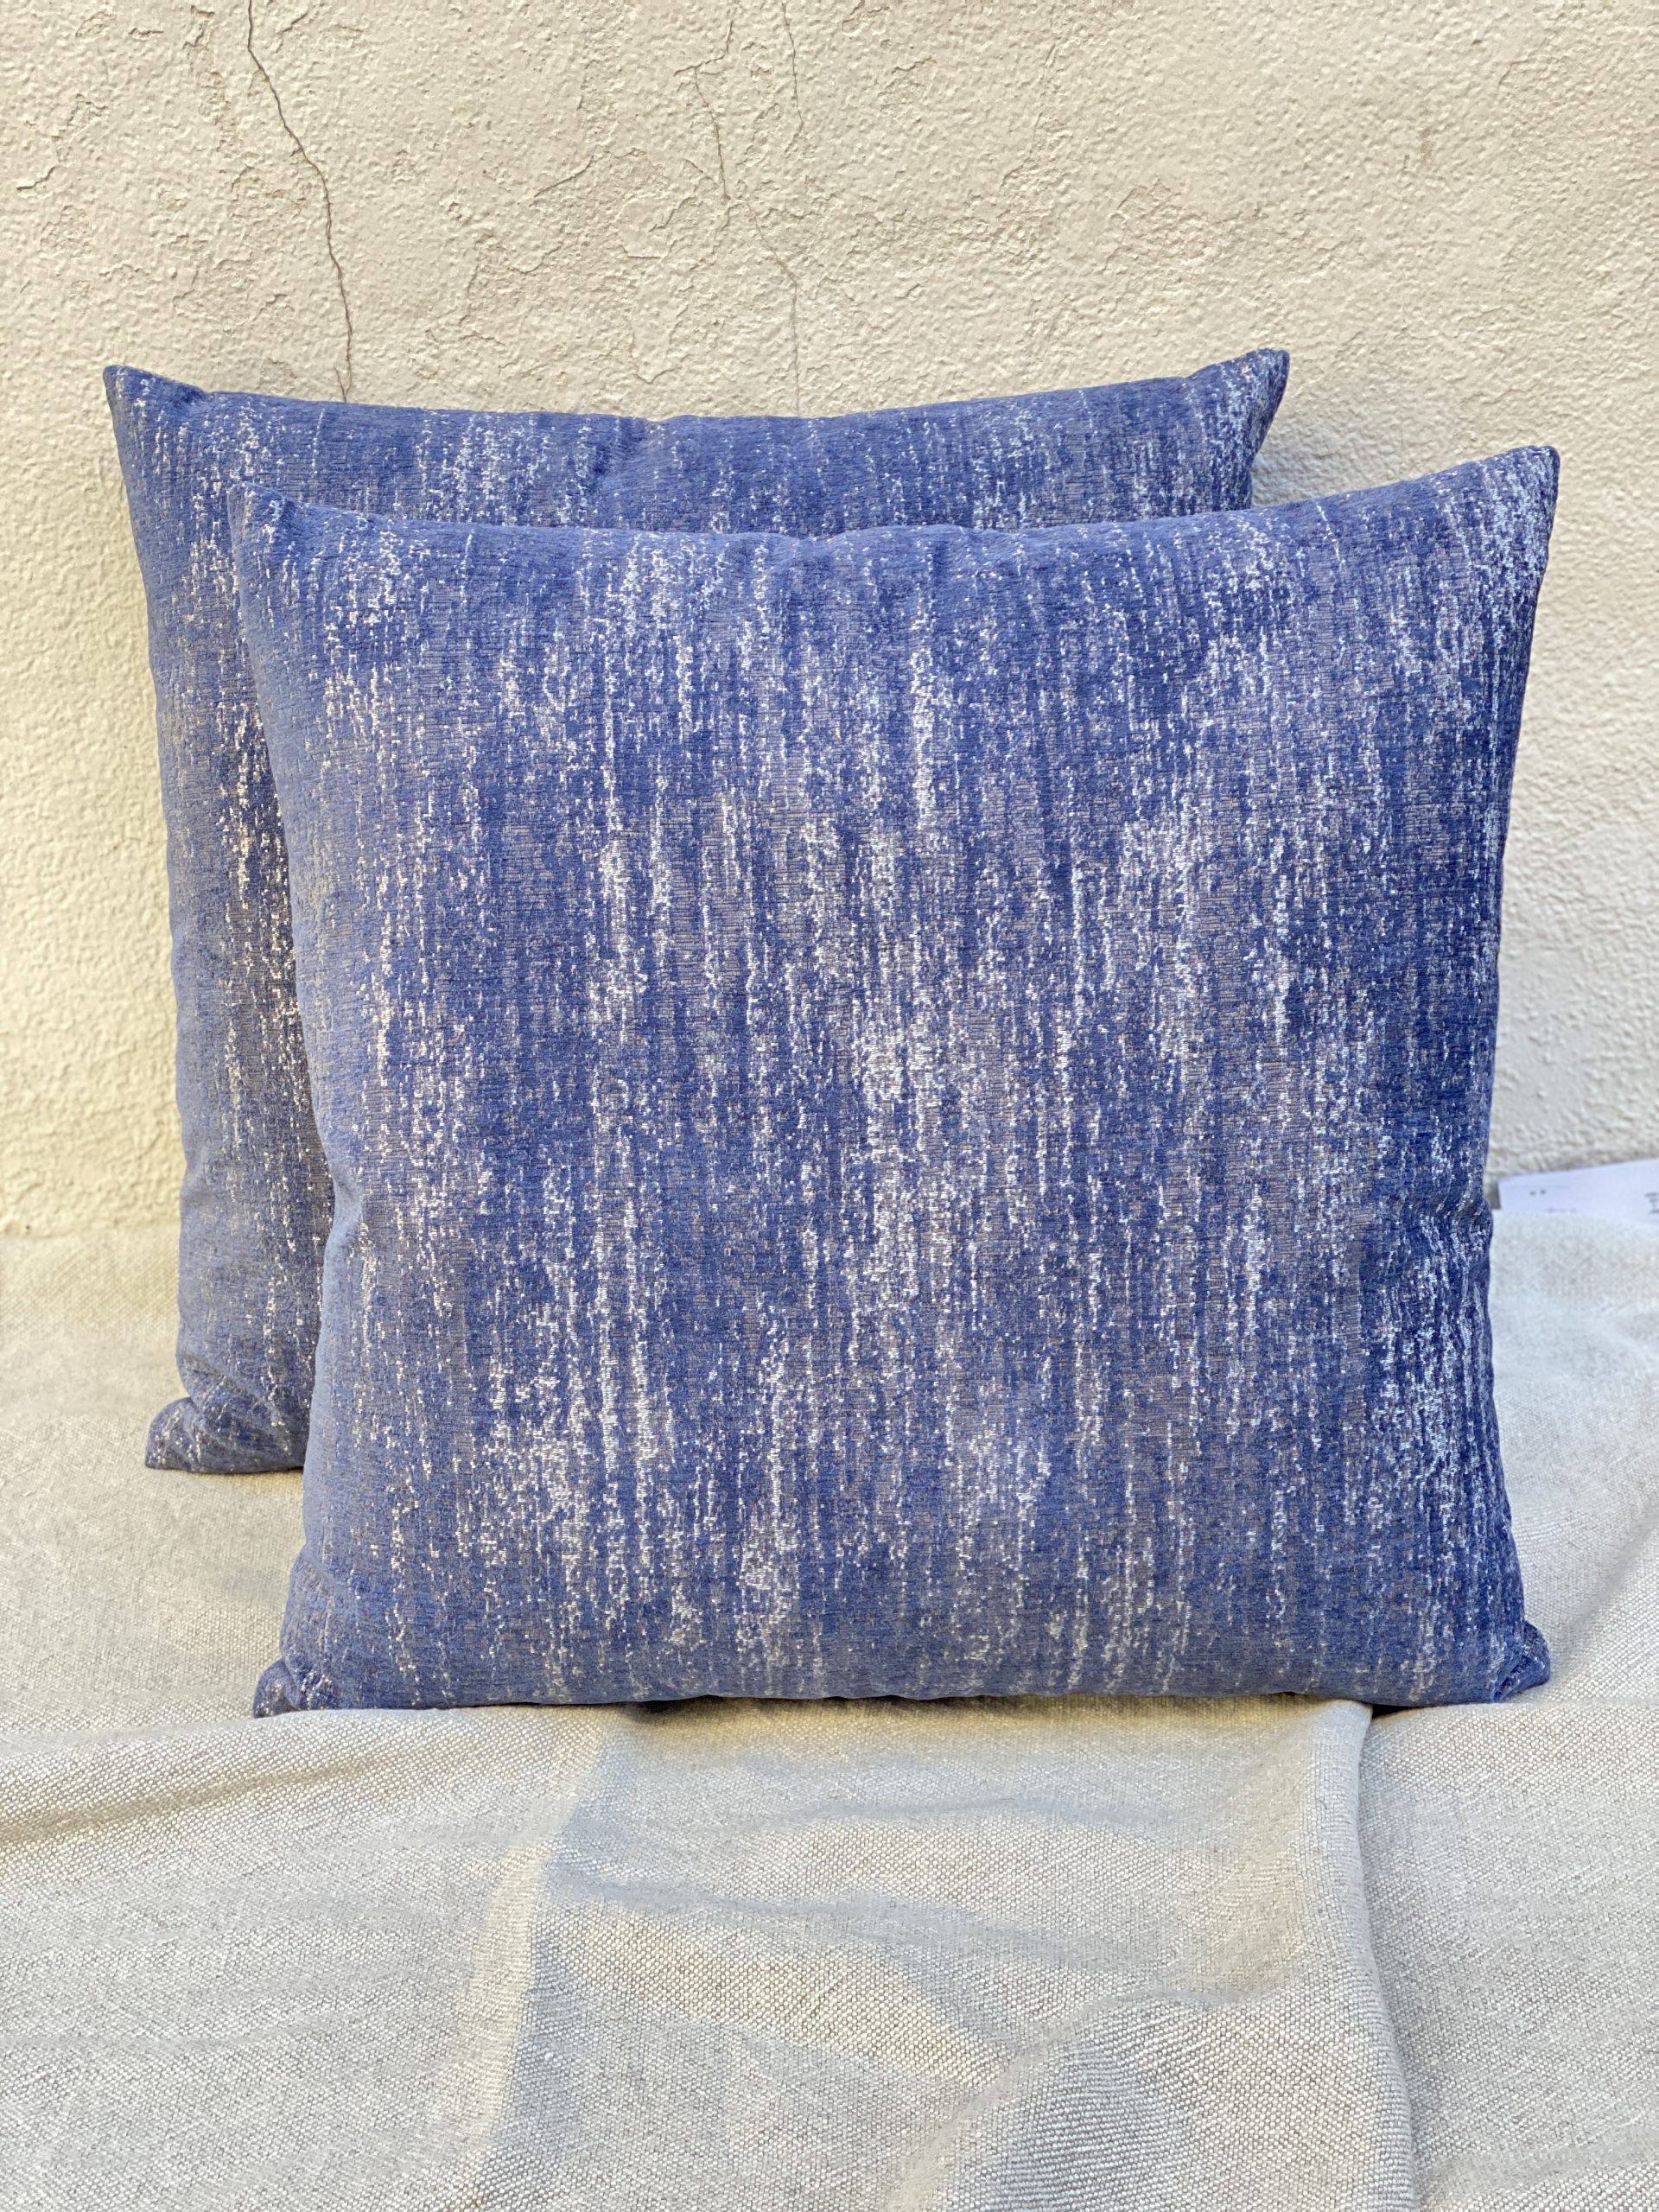 Smokey Blue Pillows